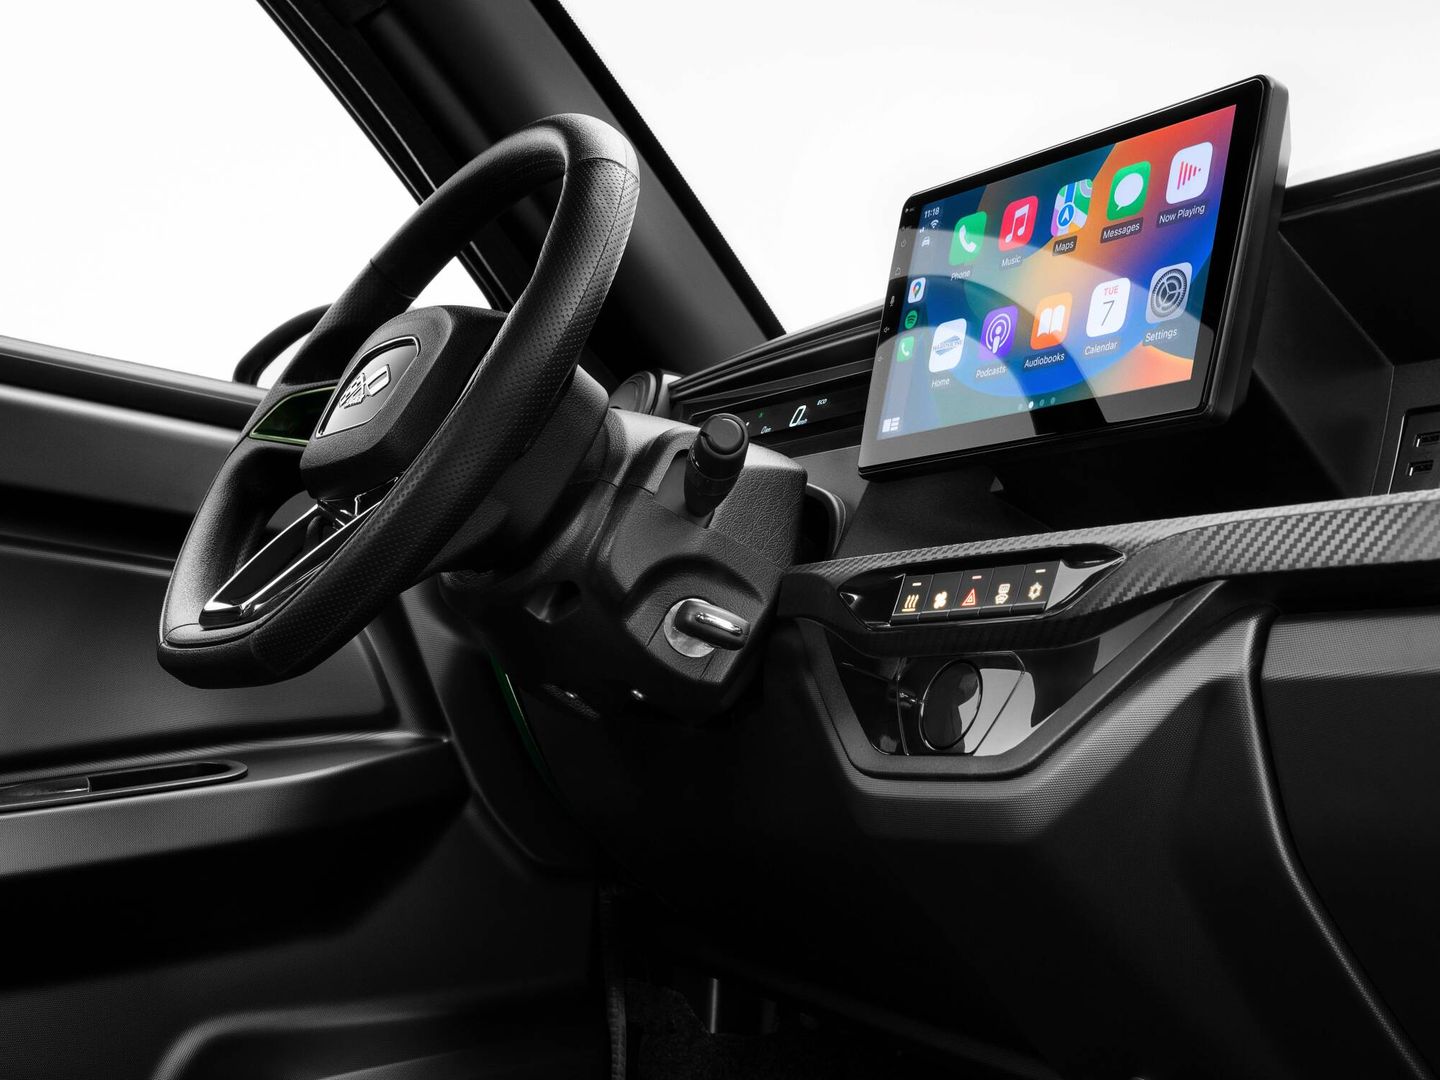 Pantalla central de 10 pulgadas en el acabado R.EBEL, compatible con CarPlay & Android Auto.